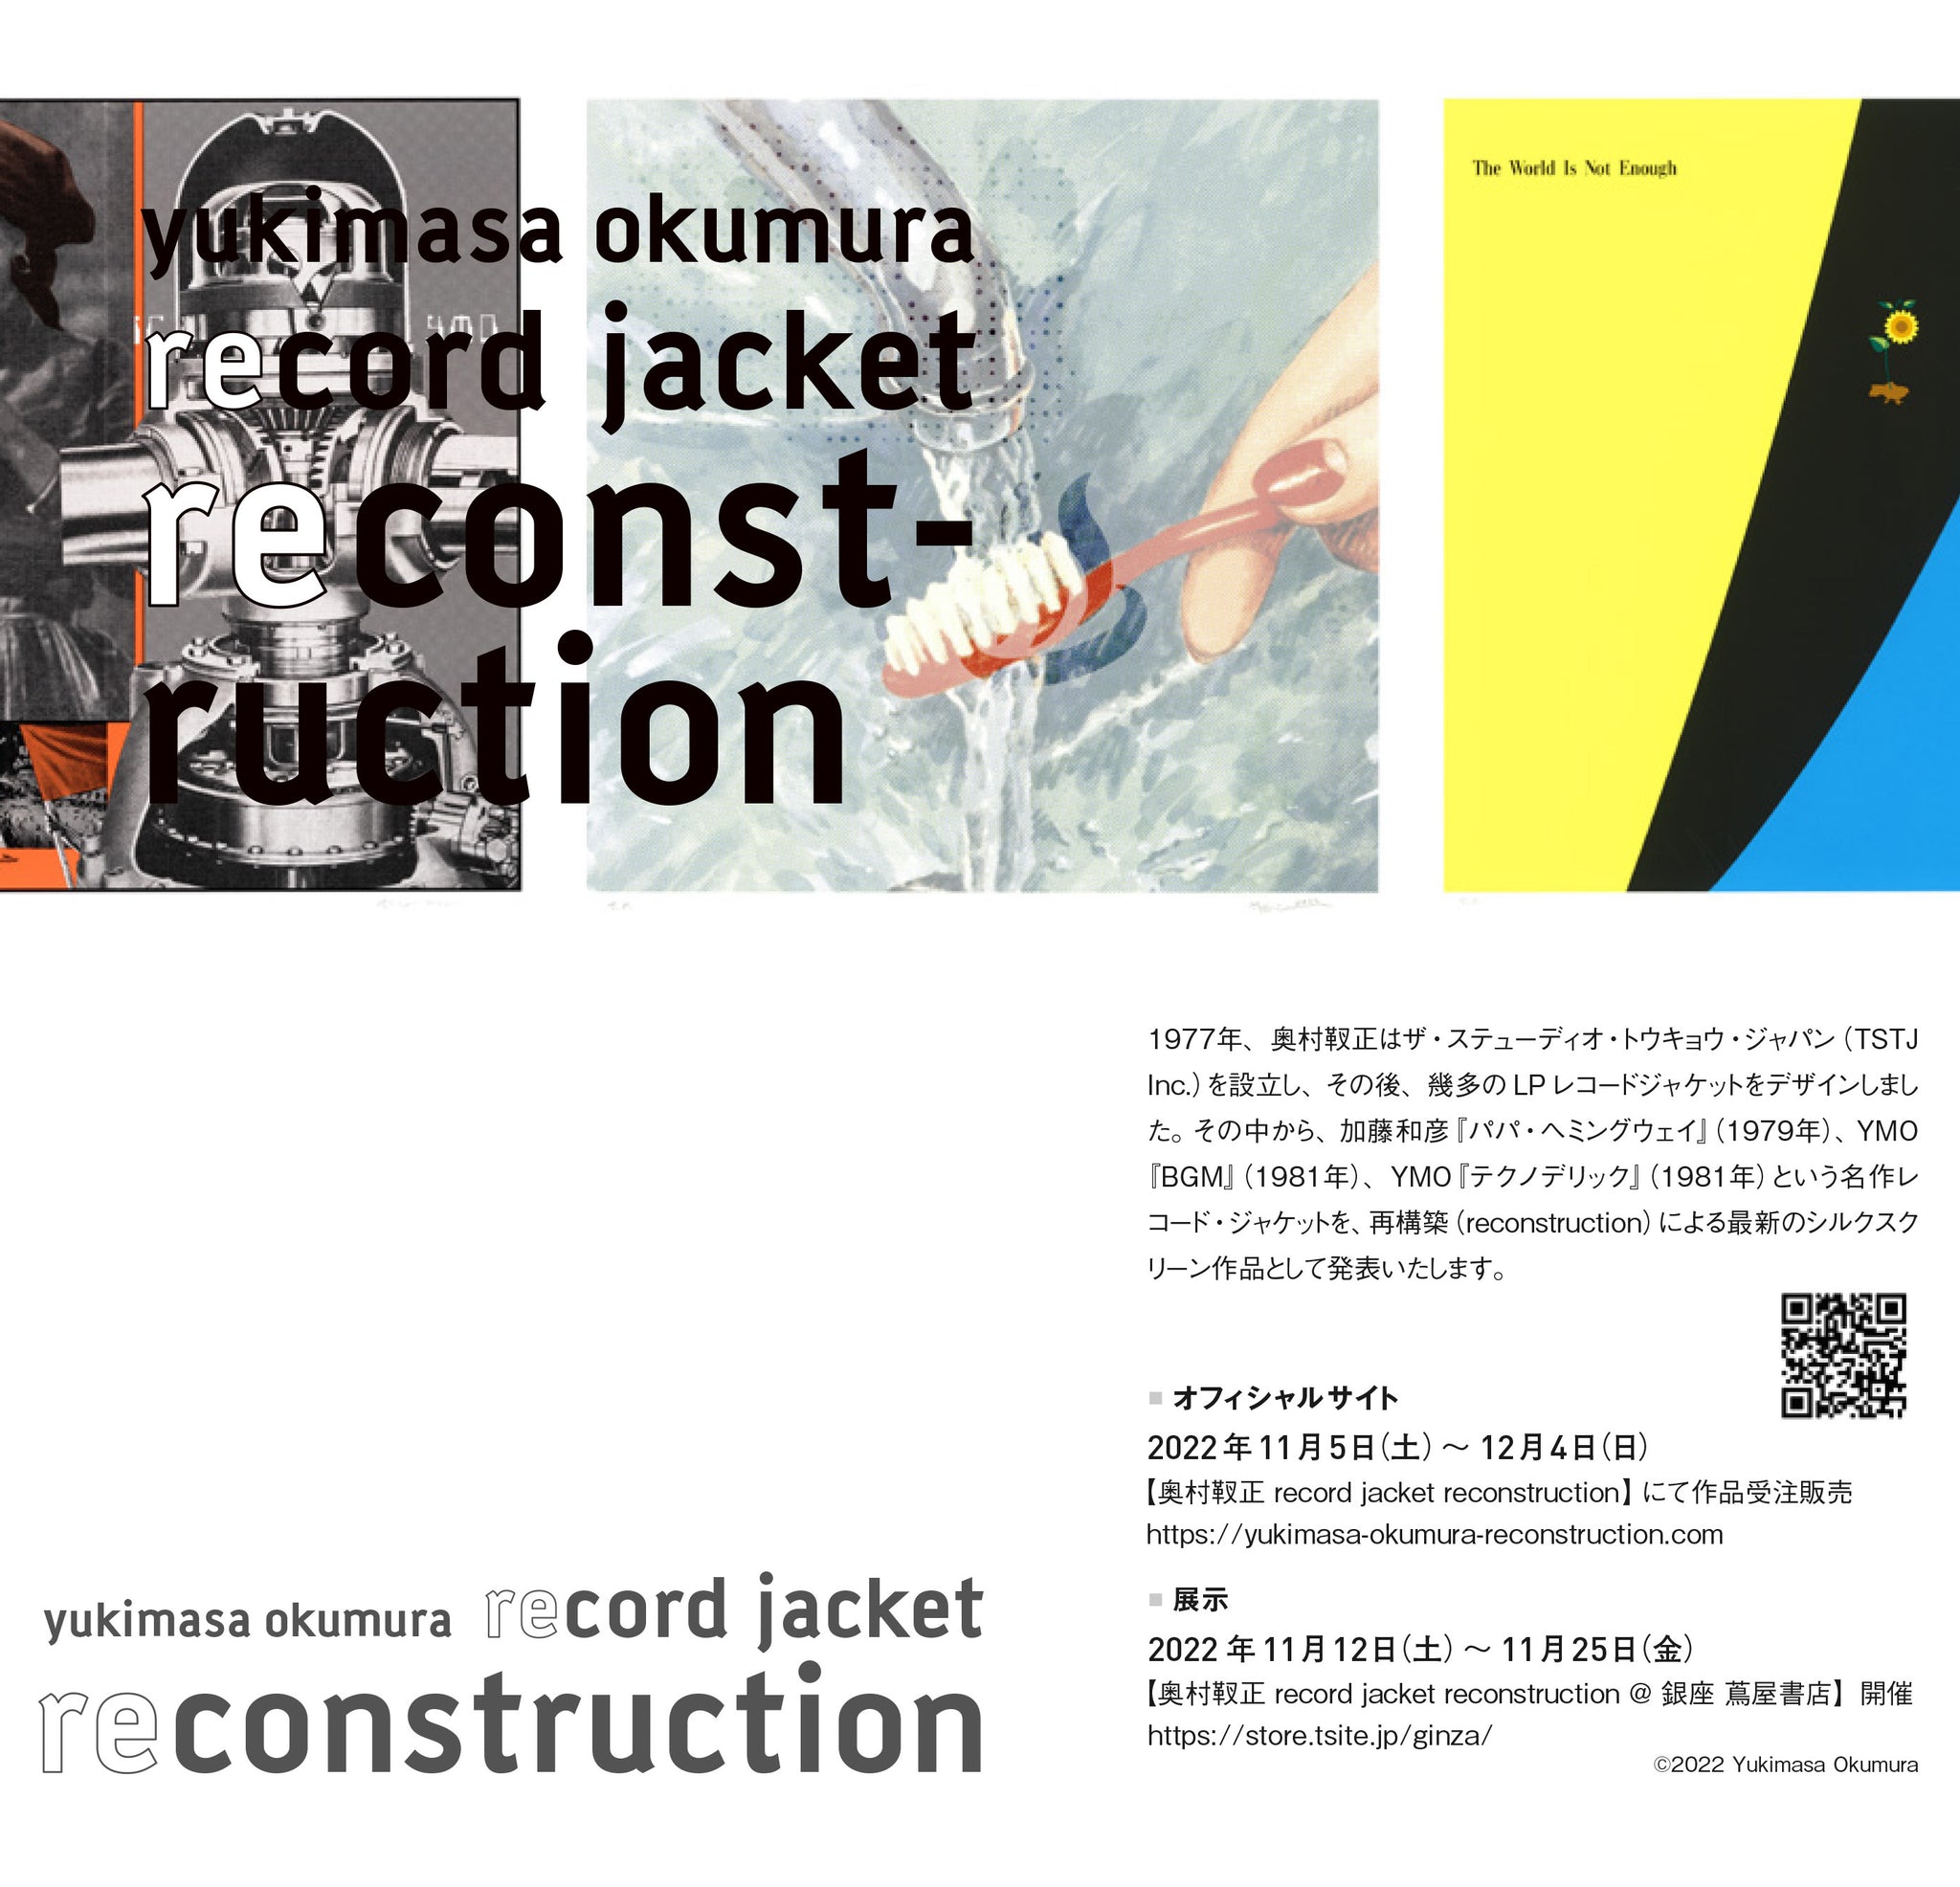 「奥村靫正 record jacket reconstruction」ハガキDMが完成しました。